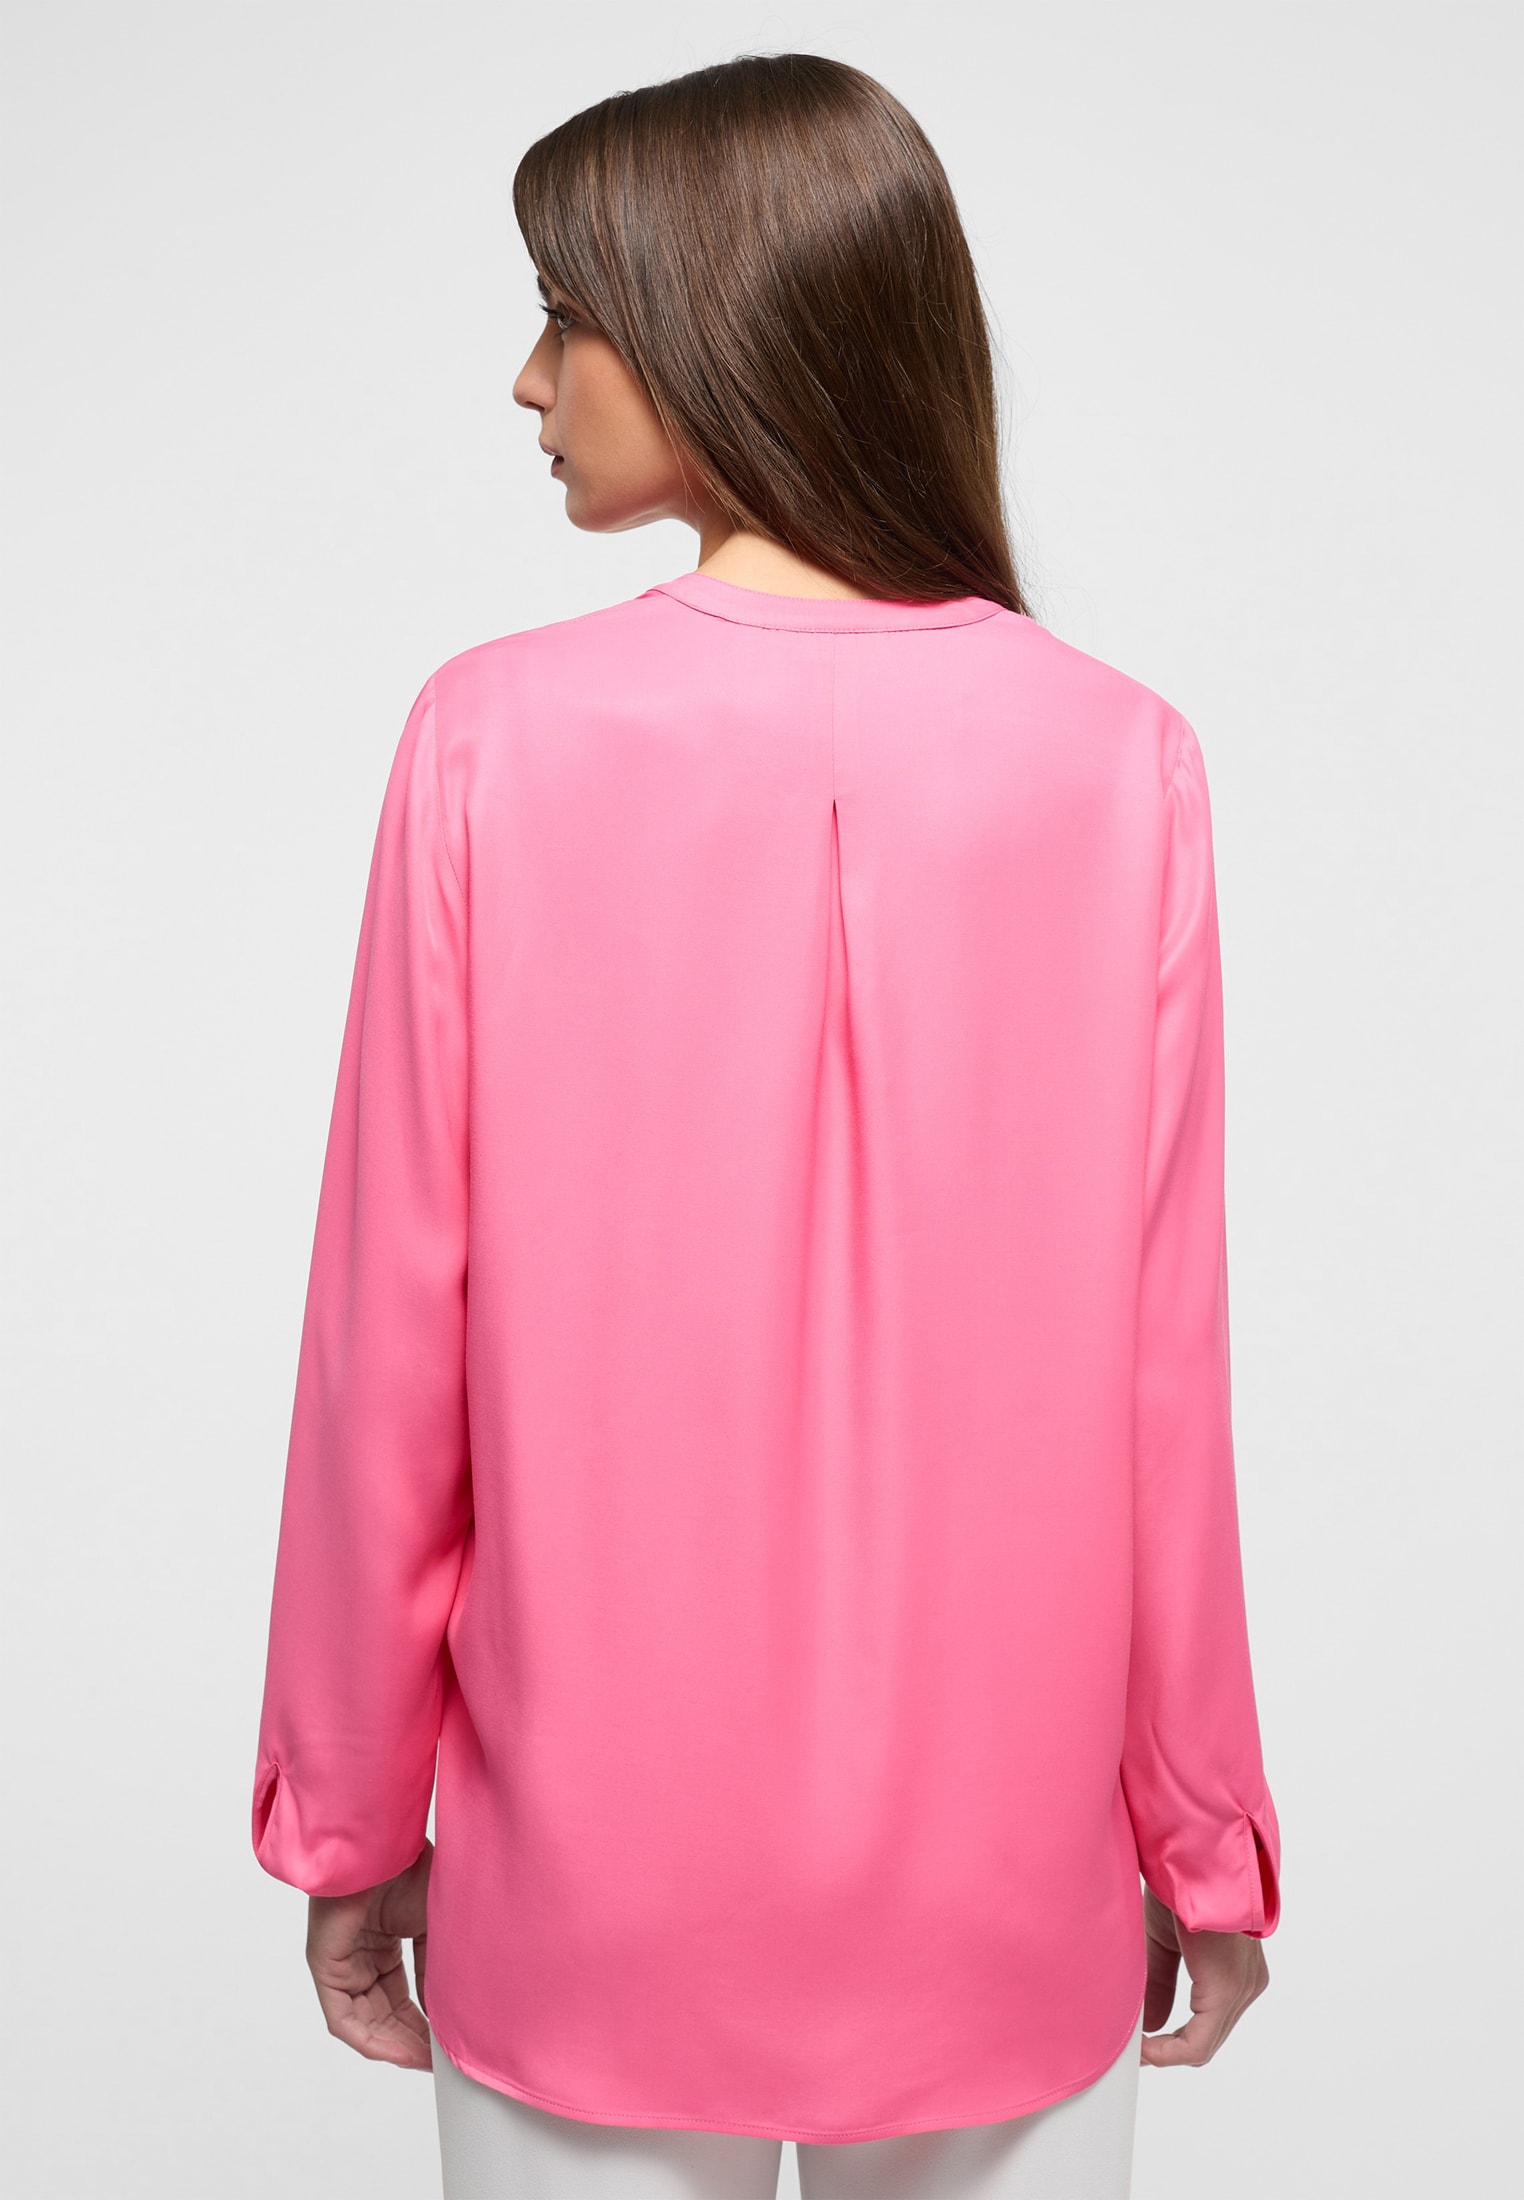 | Langarm Viscose Bluse in 2BL04272-15-21-42-1/1 pink pink | | unifarben Shirt | 42